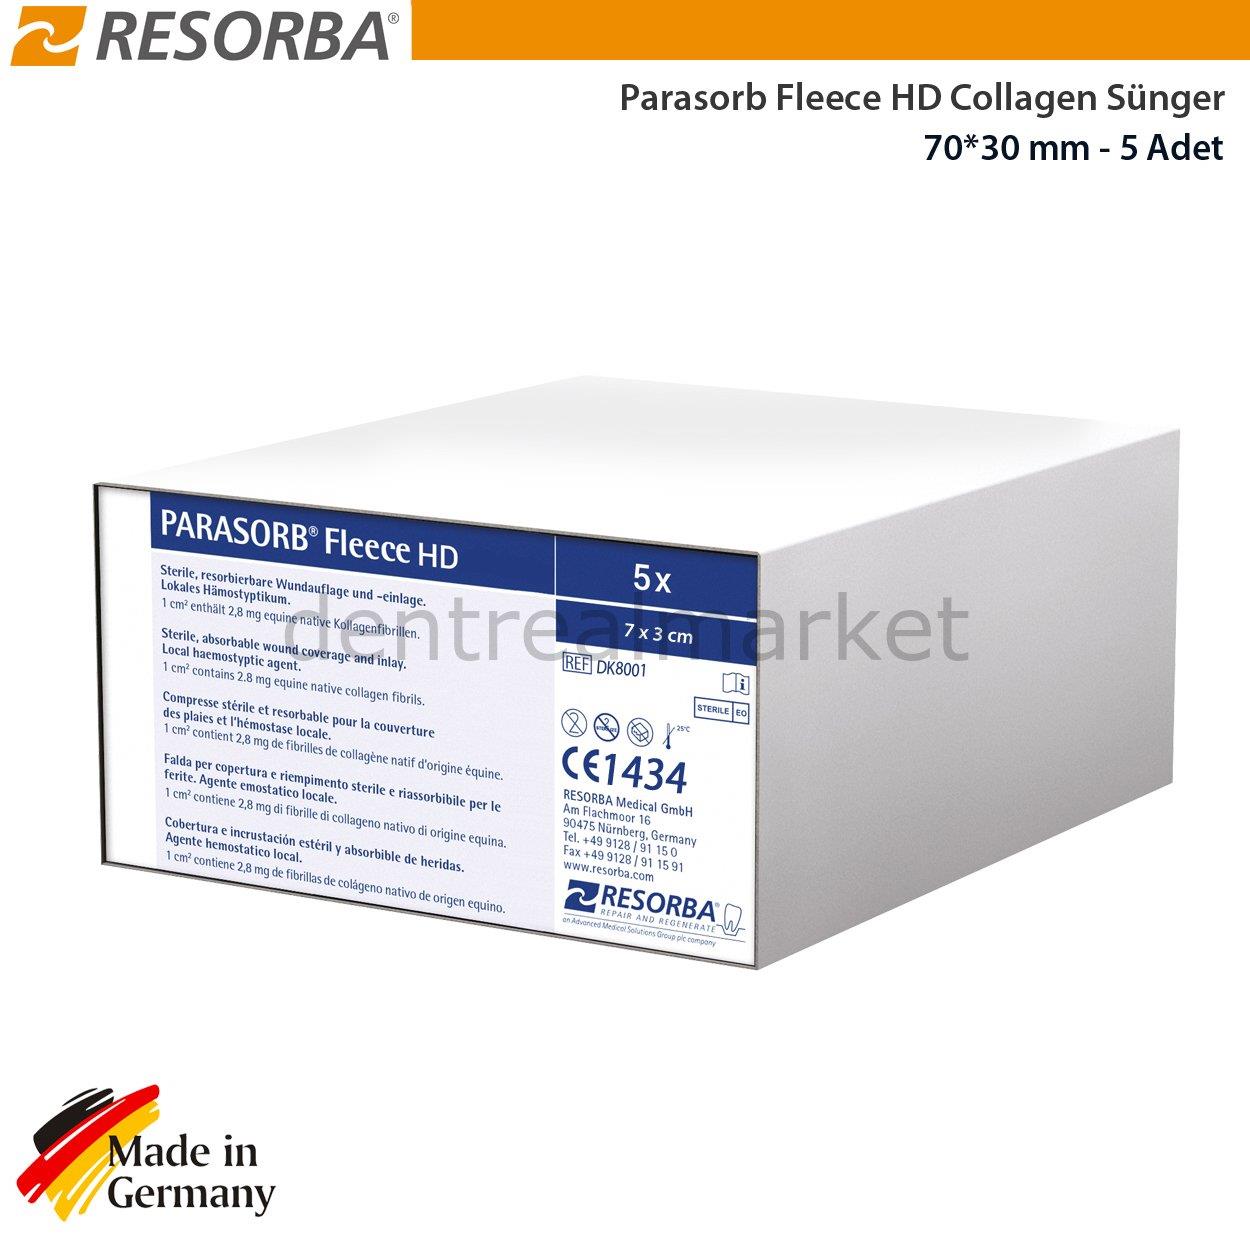 Parasorb Fleece HD Collagen Sponges - 70*30 mm